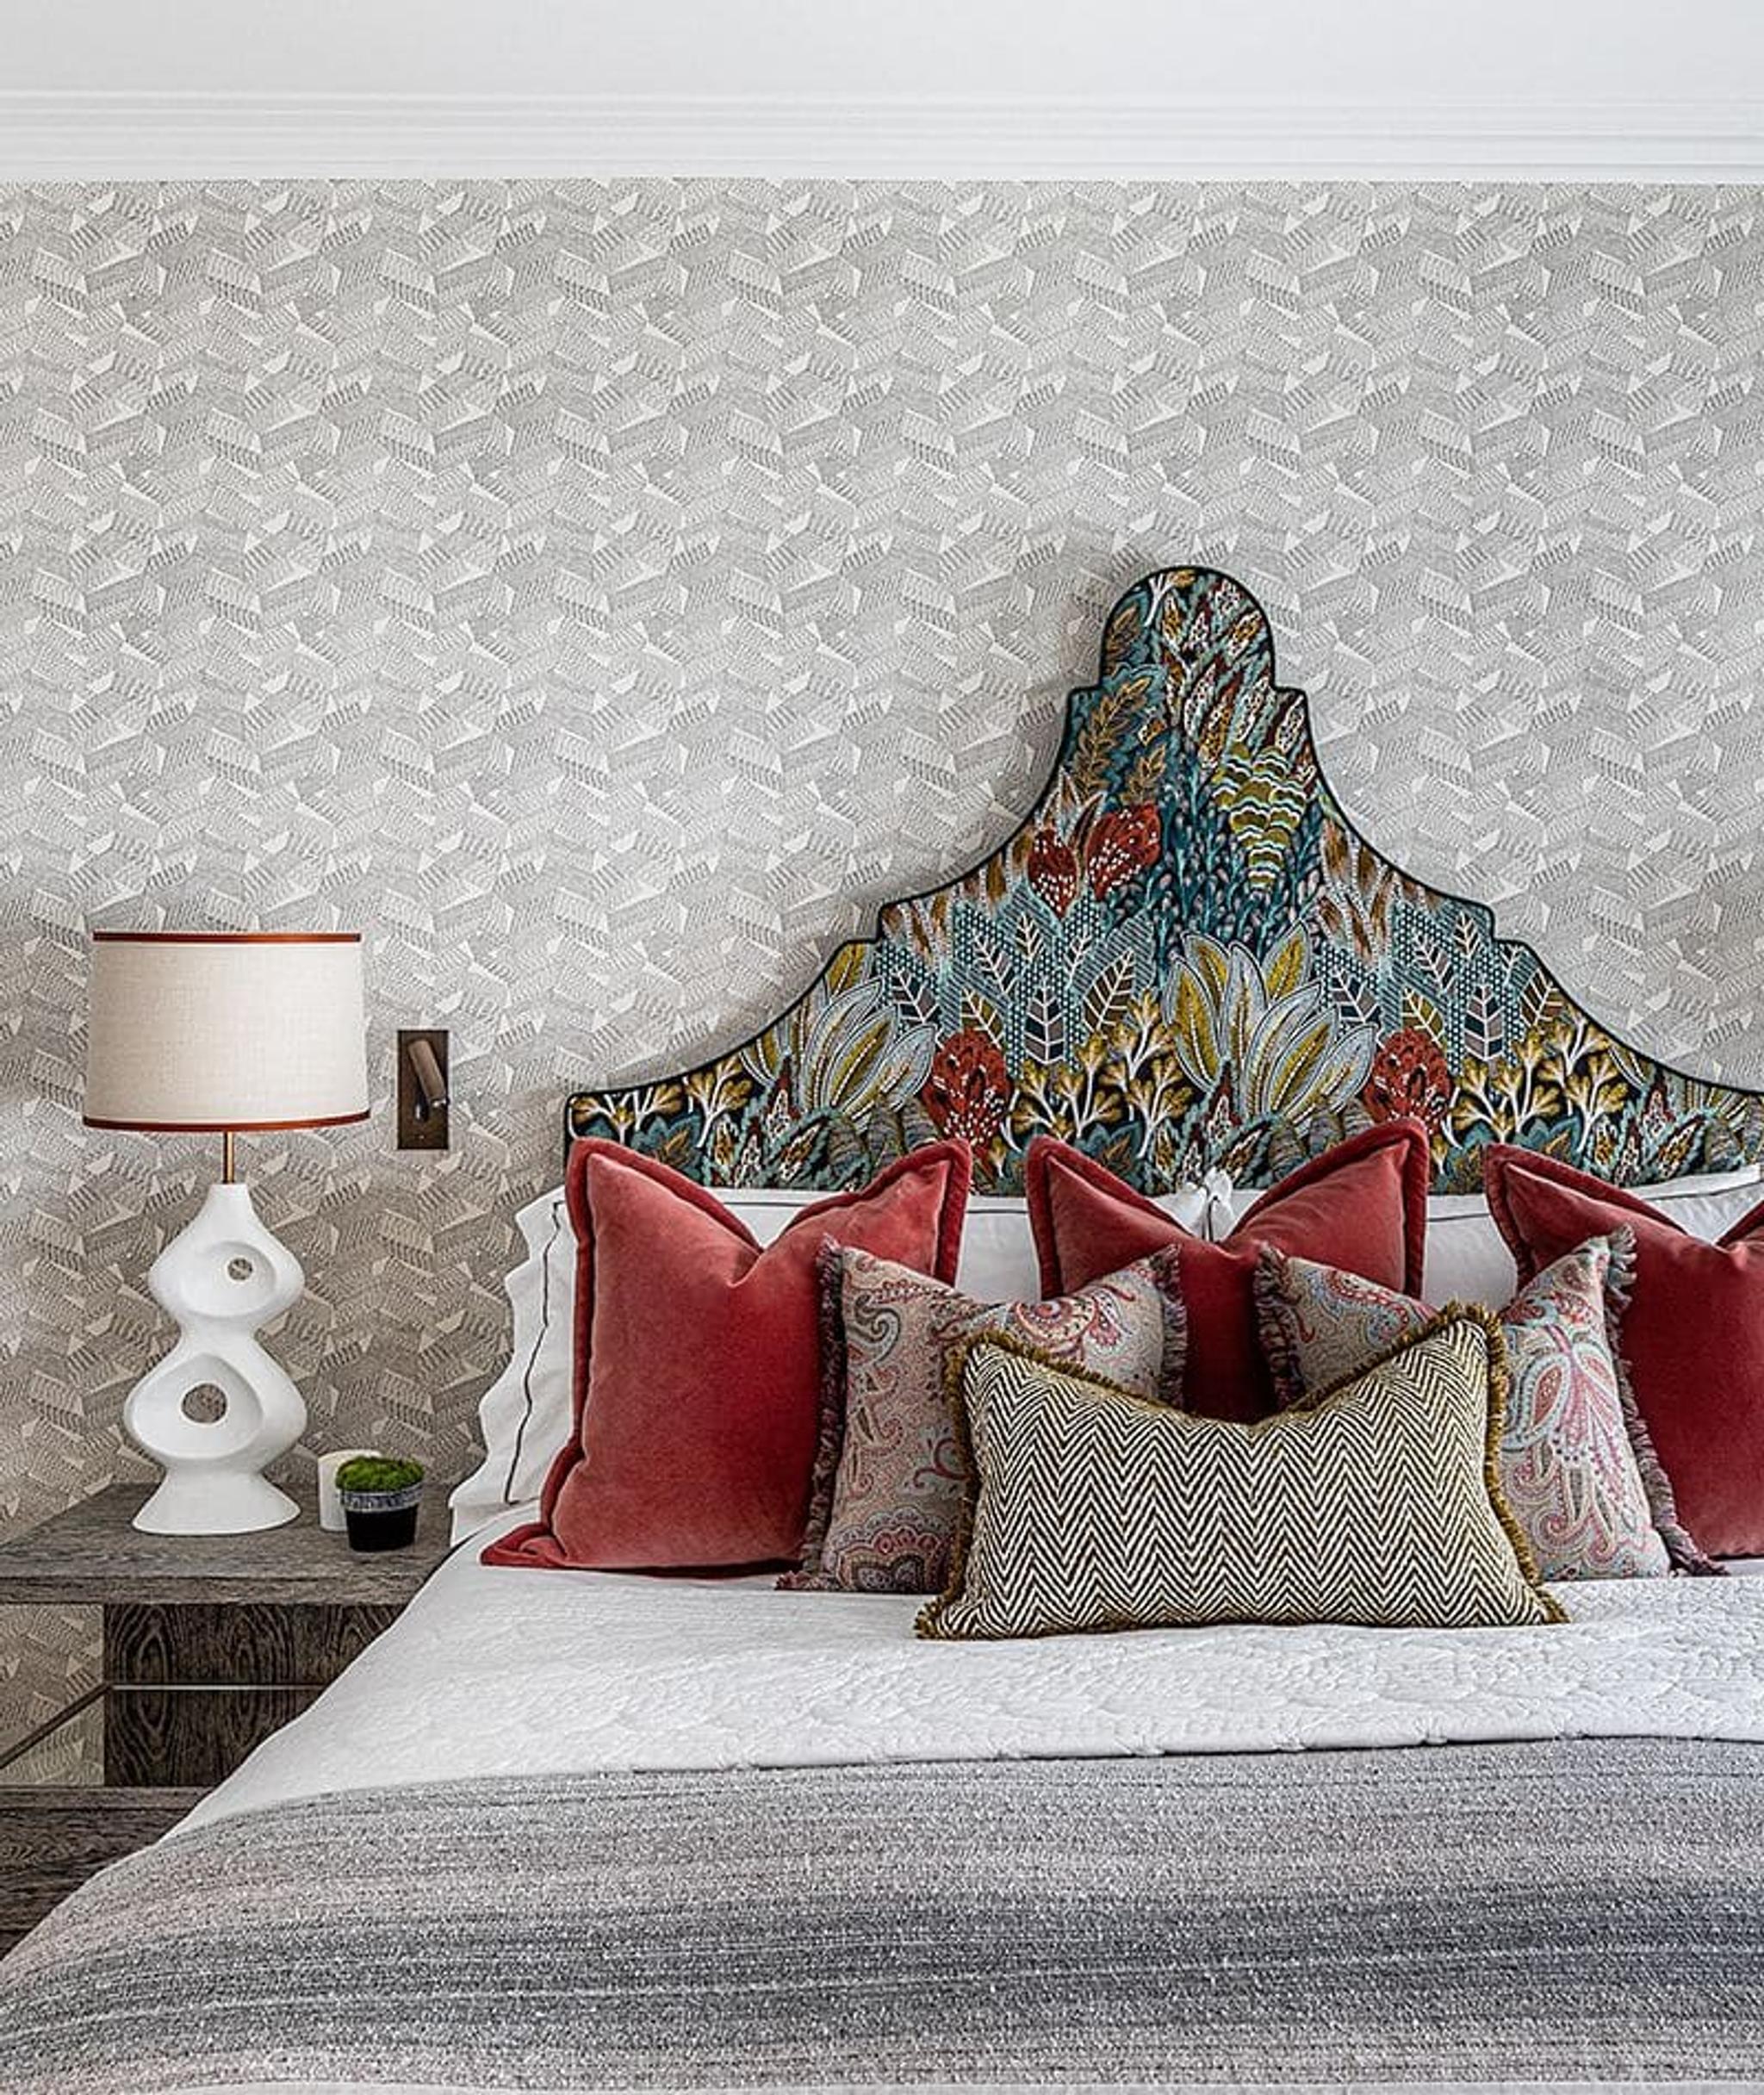 Chelsea Townhouse, chambre principale : des tissus richement brodés et un superbe lit d'inspiration rococo ajoutent une touche dramatique à la chambre.